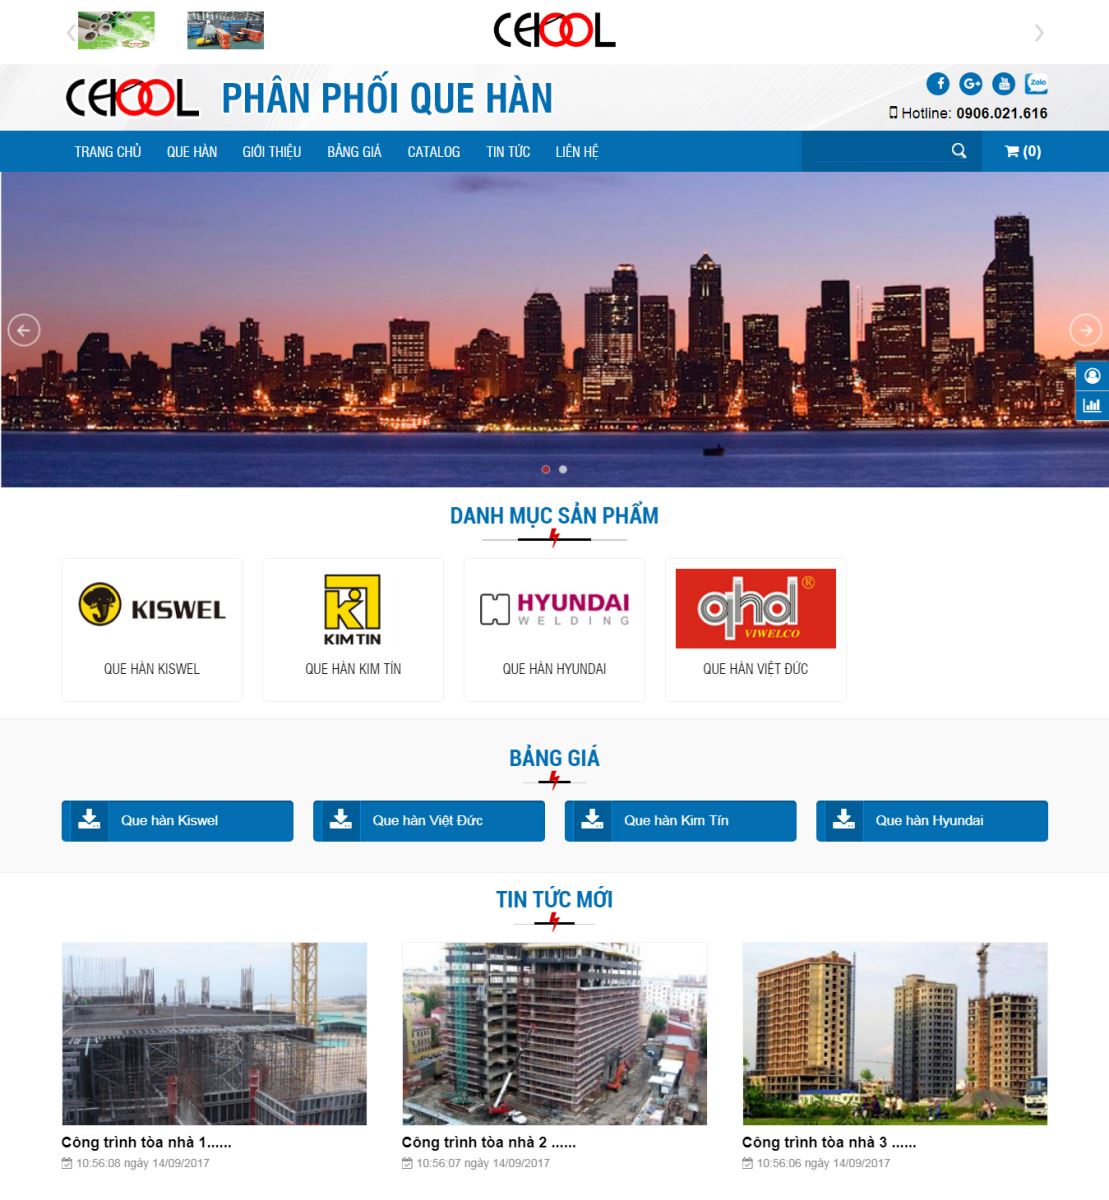 Thiết kế website Phân Phối Que Hàn - Công ty Cekool